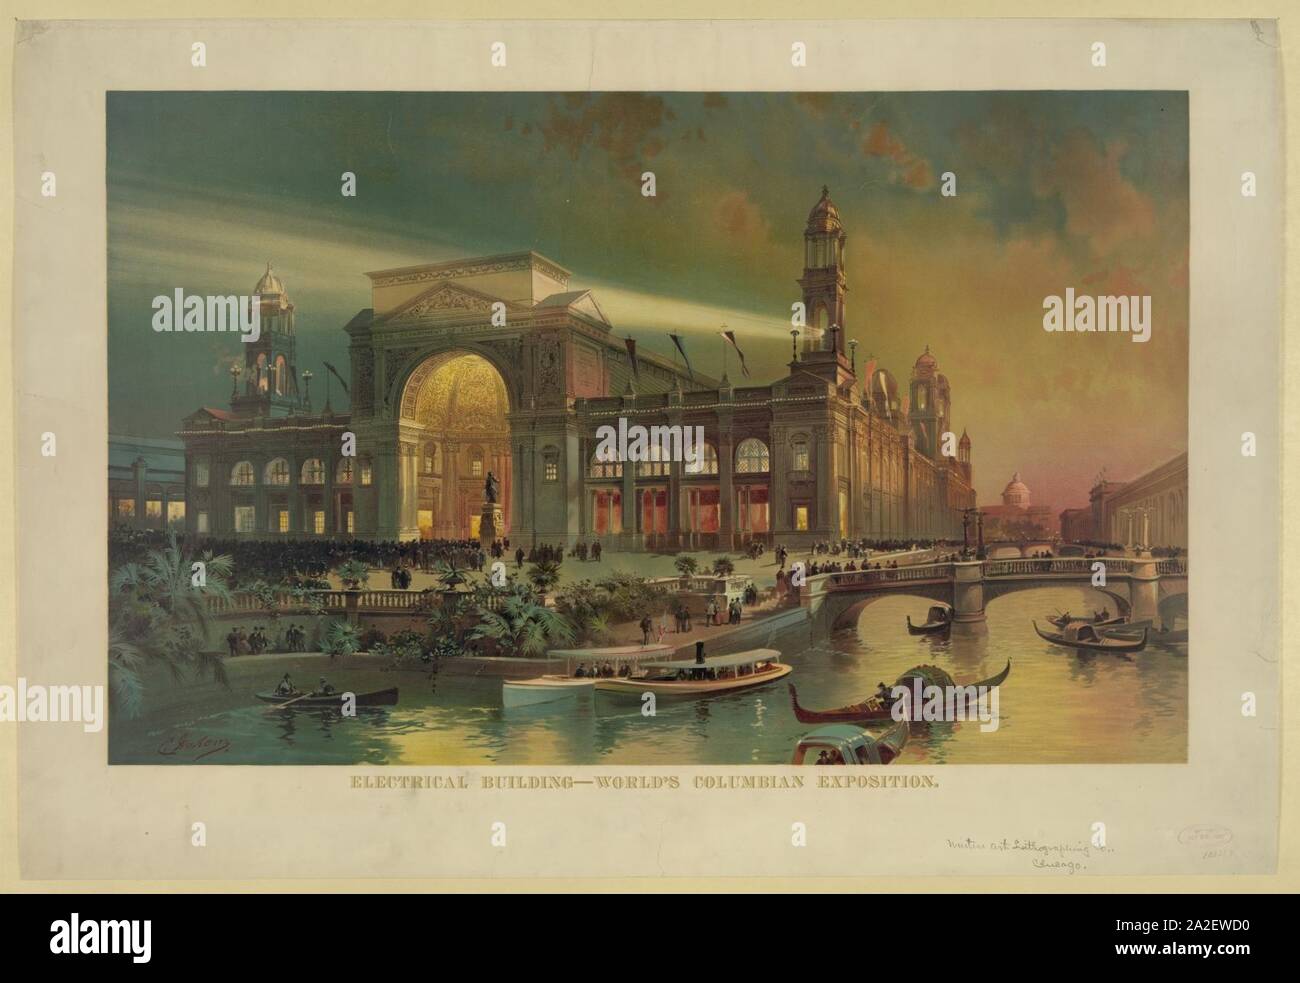 Elektrische Gebäude. World's Columbian Exposition Stockfoto